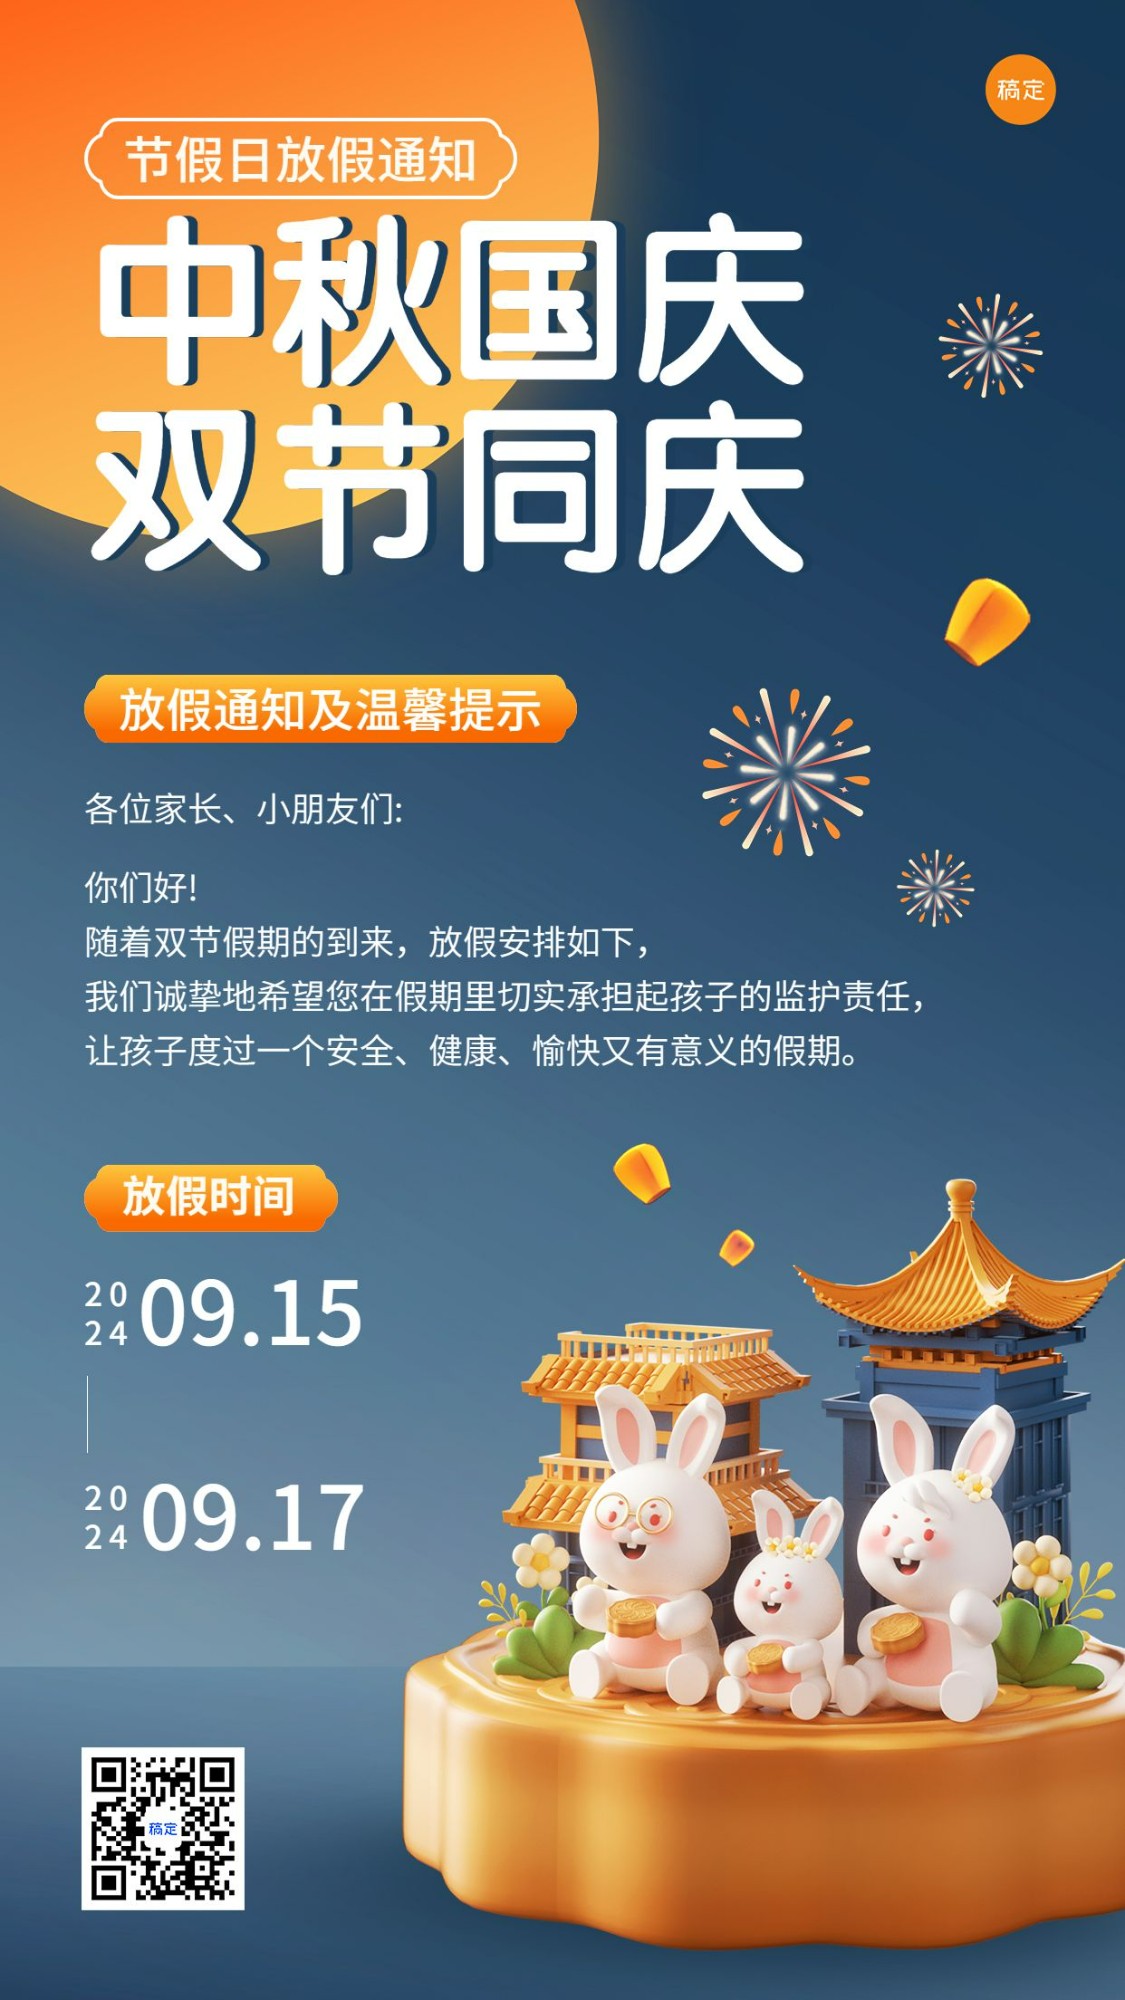 中秋节国庆节兴趣班放假通软3D风格手机海报预览效果